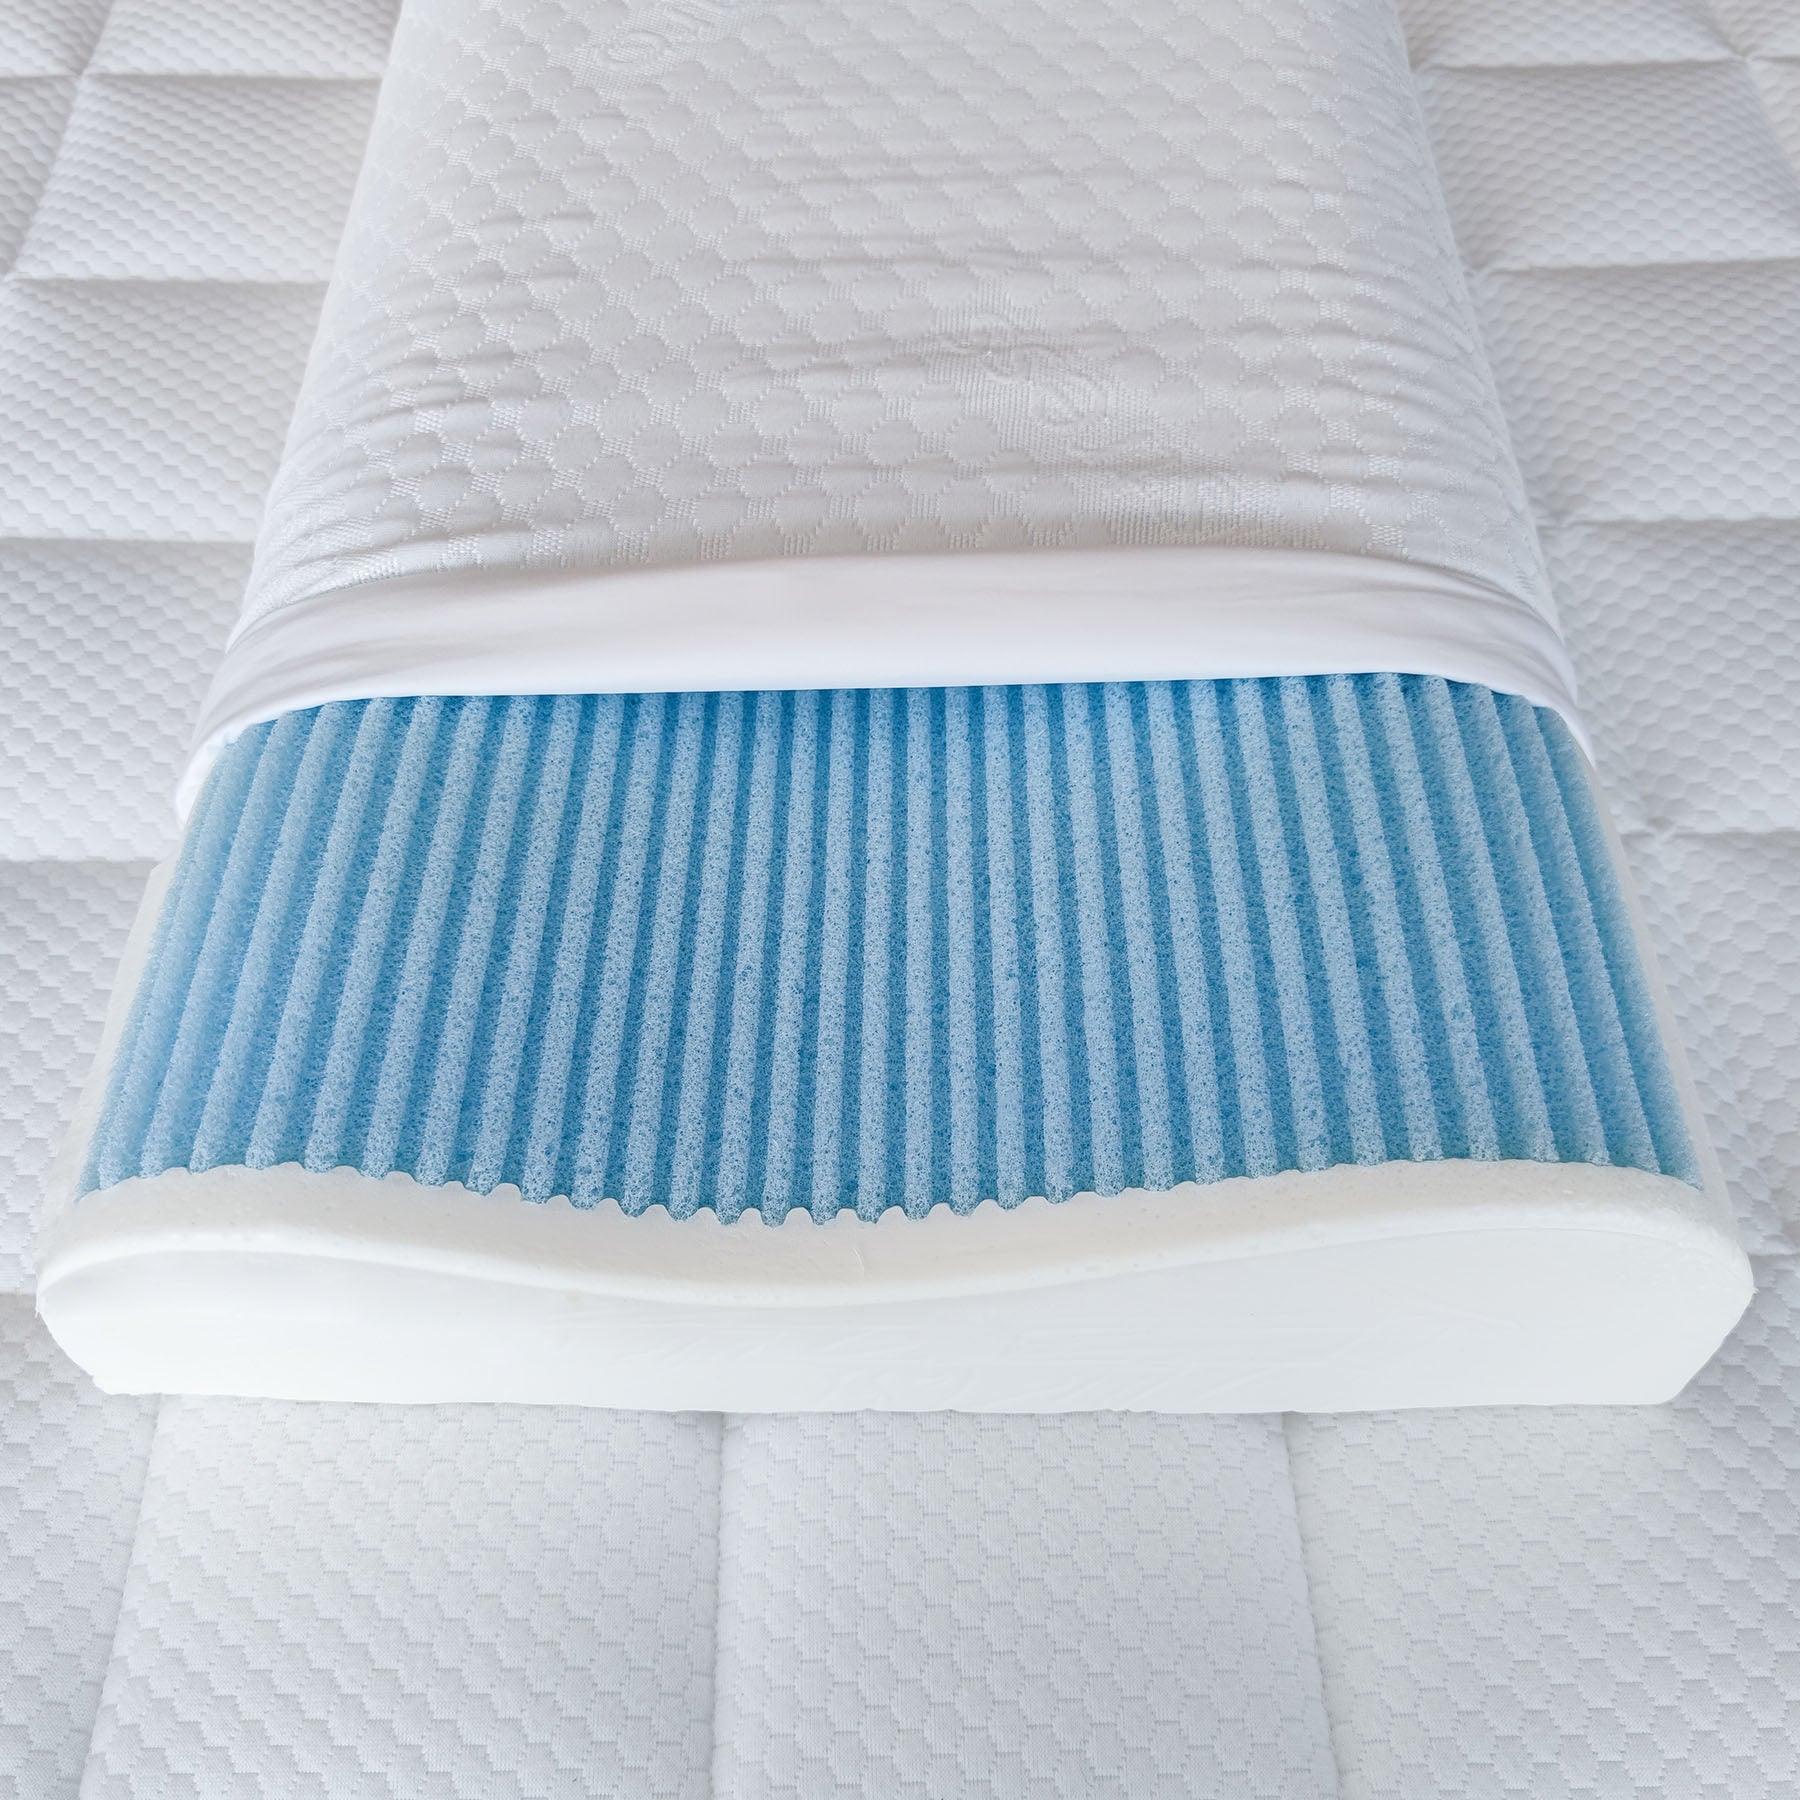 Primo piano del cuscino Lignano in memory foam e water gel di Beliamo, che evidenzia la combinazione di comfort e freschezza